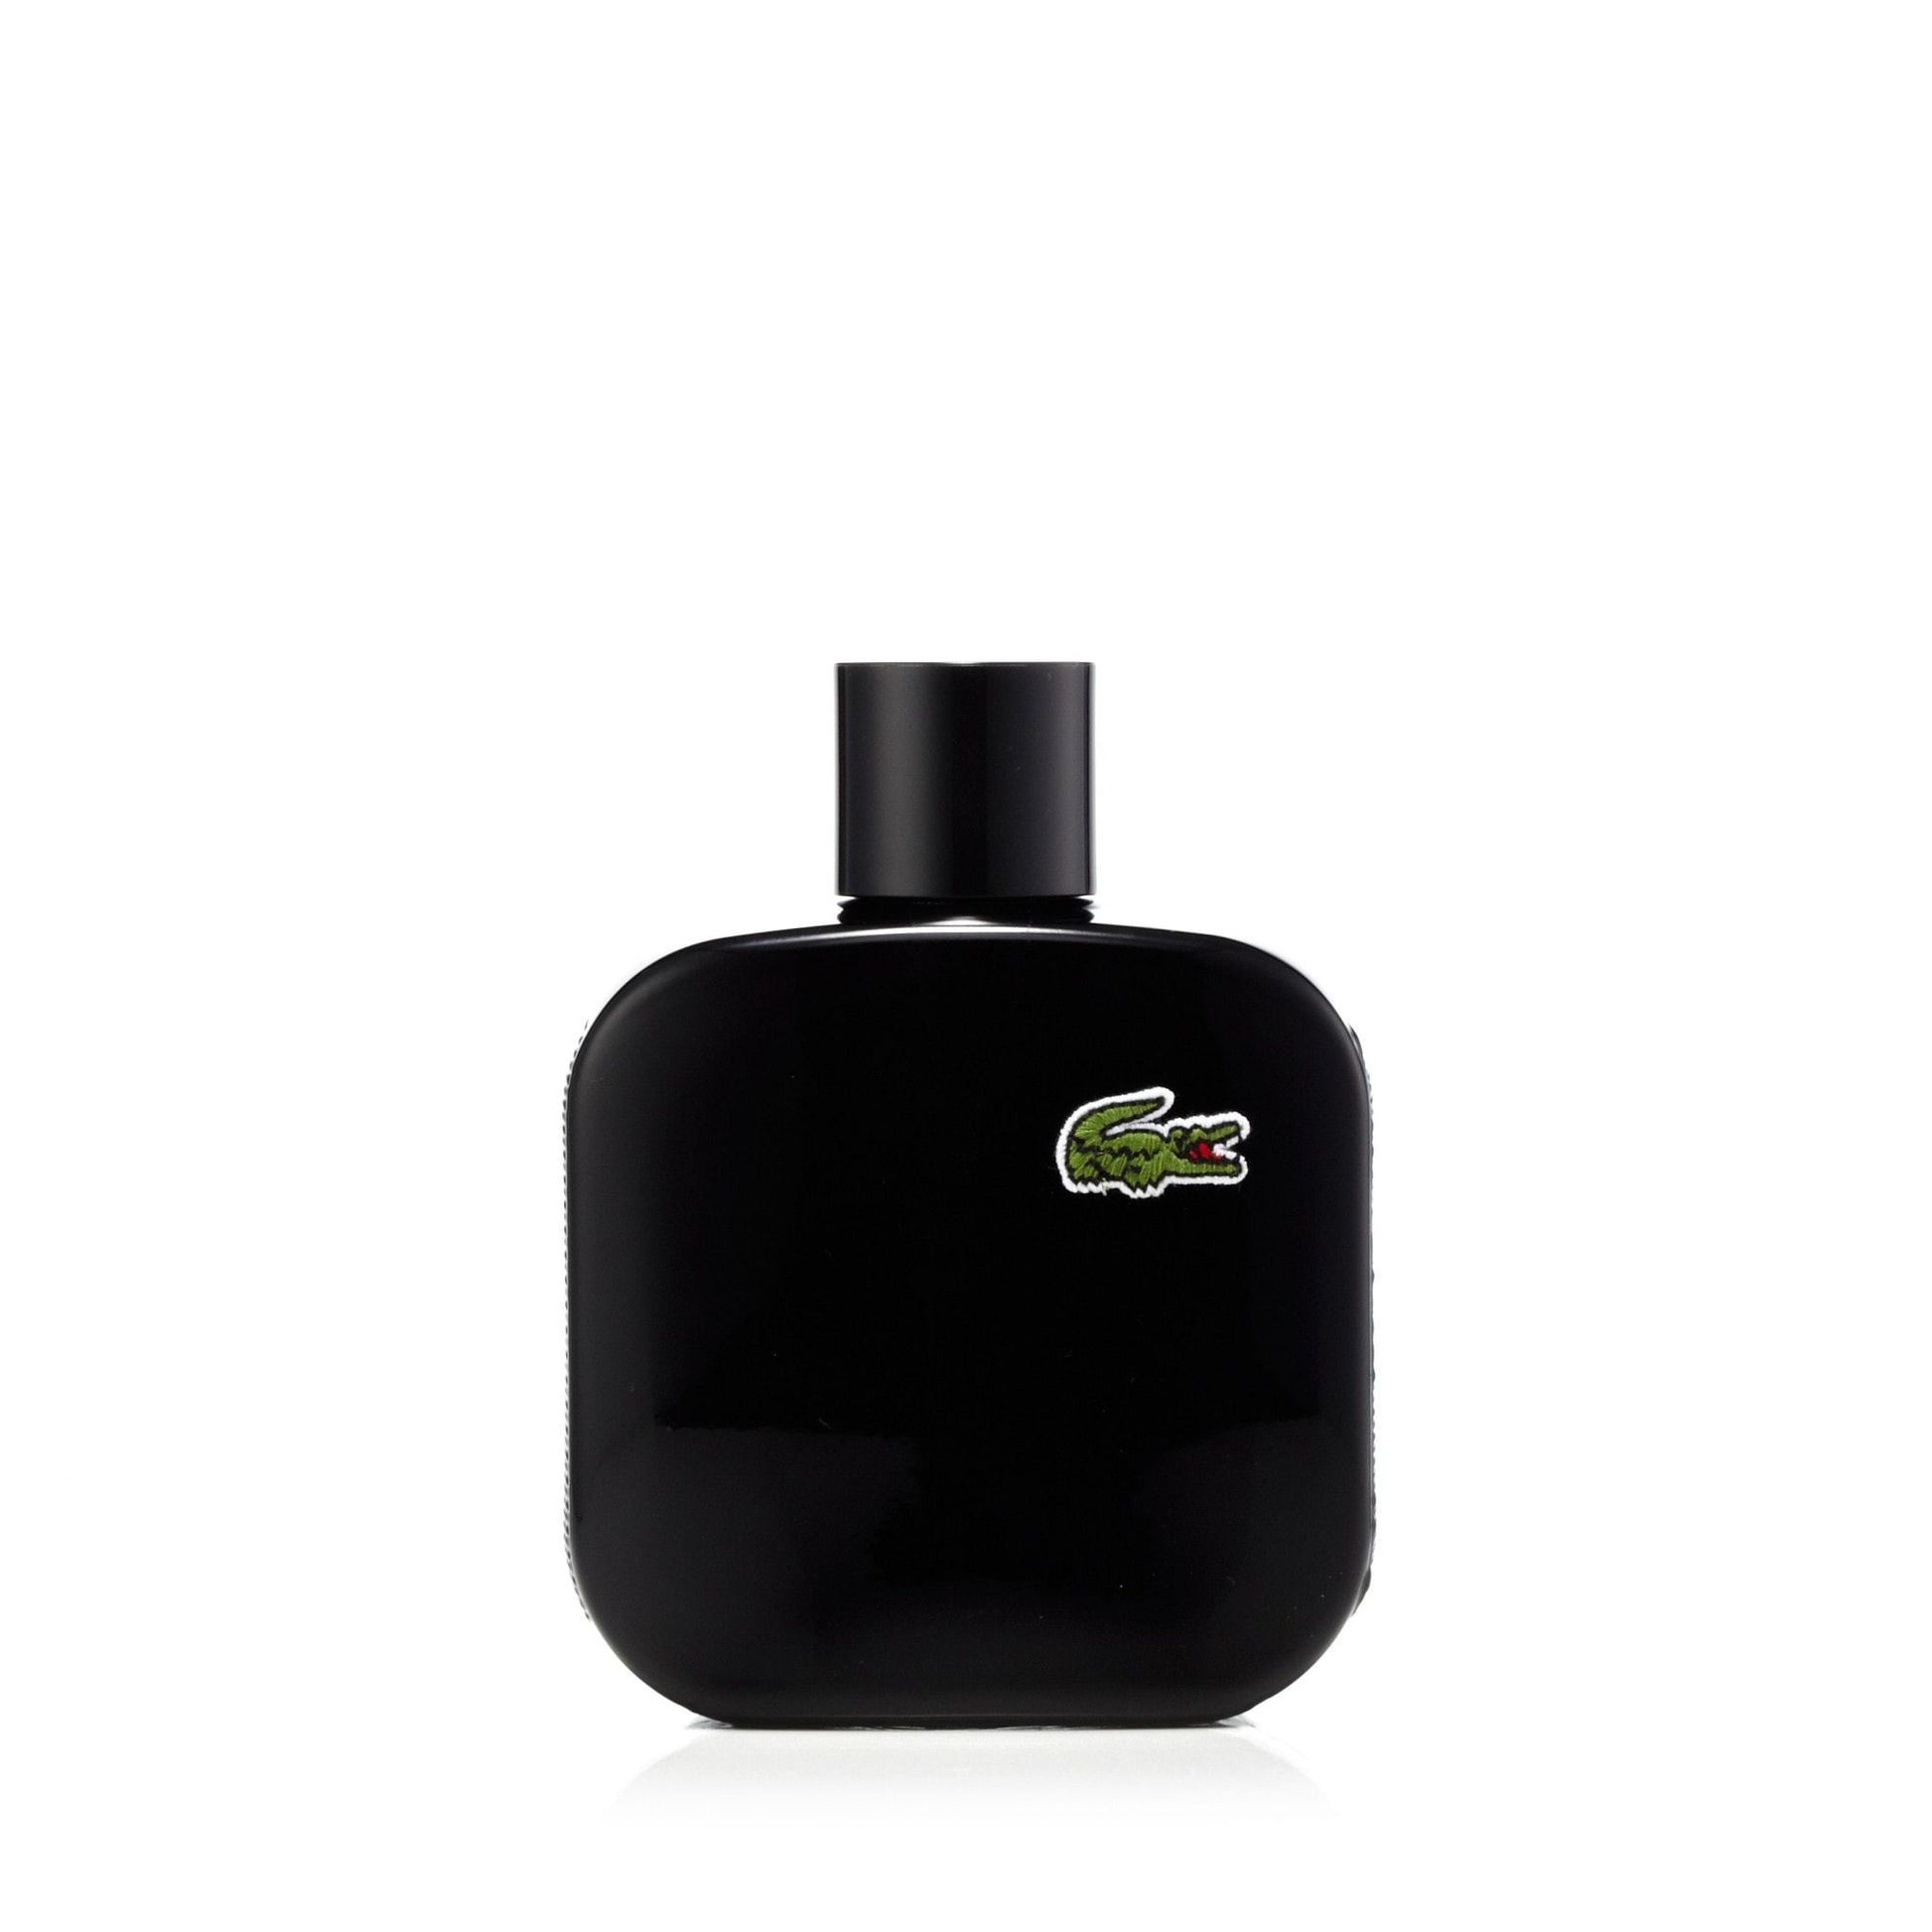 L.12.12 Noir Eau de Toilette Spray for Men by Lacoste, Product image 2